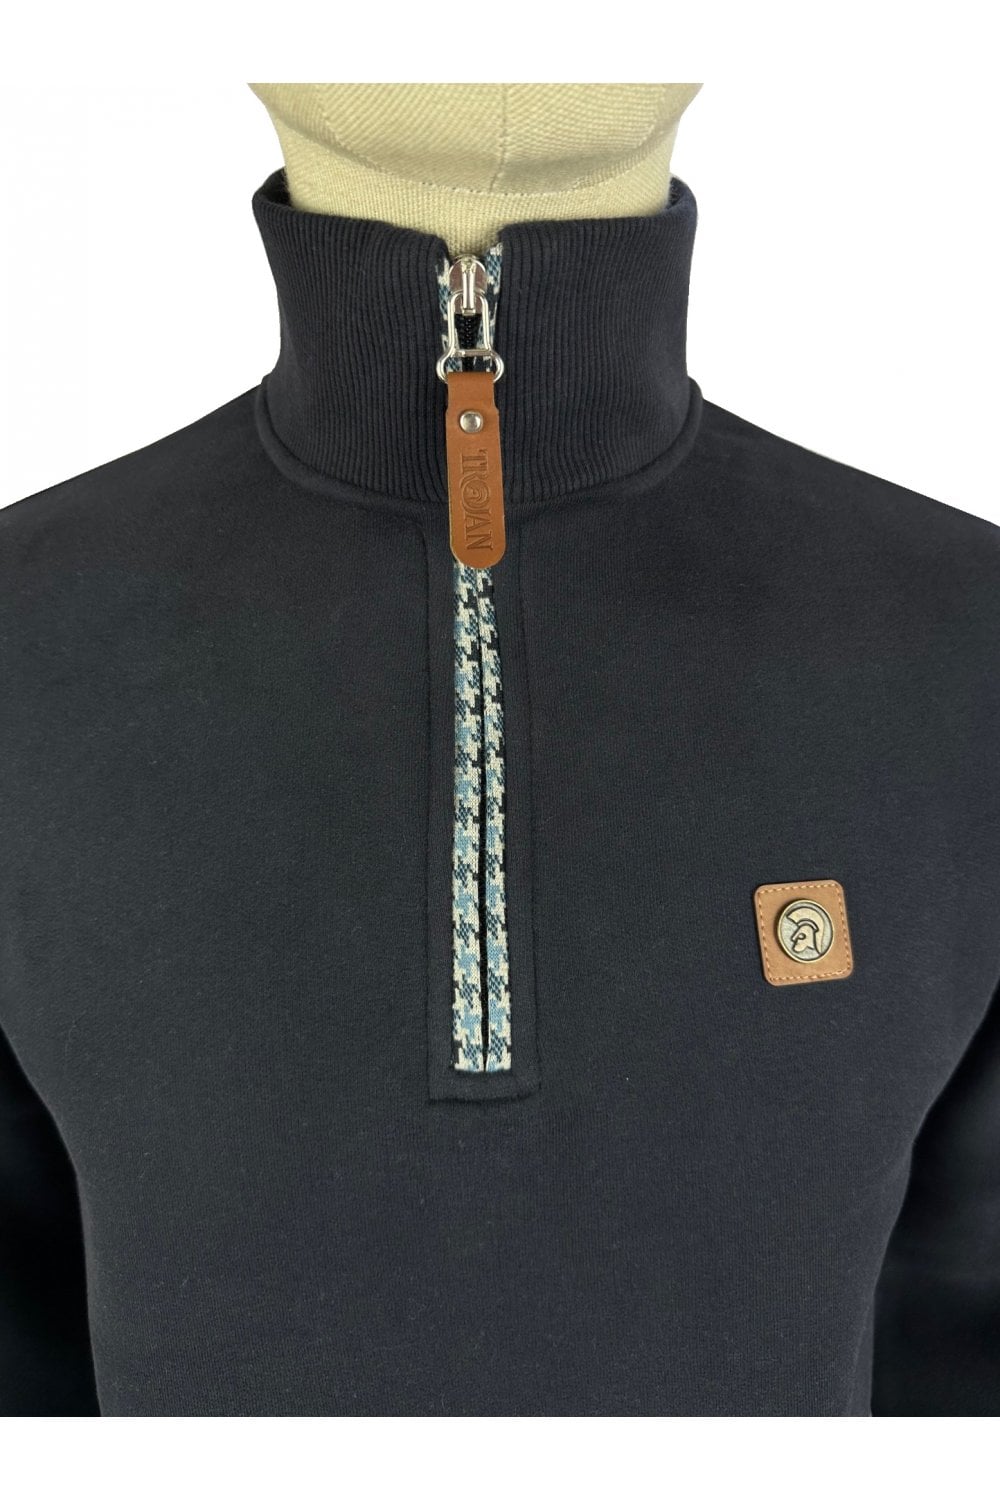 TROJAN Houndstooth Trim 1/4 Zip Sweater TR/8805 Navy - Raw Menswear